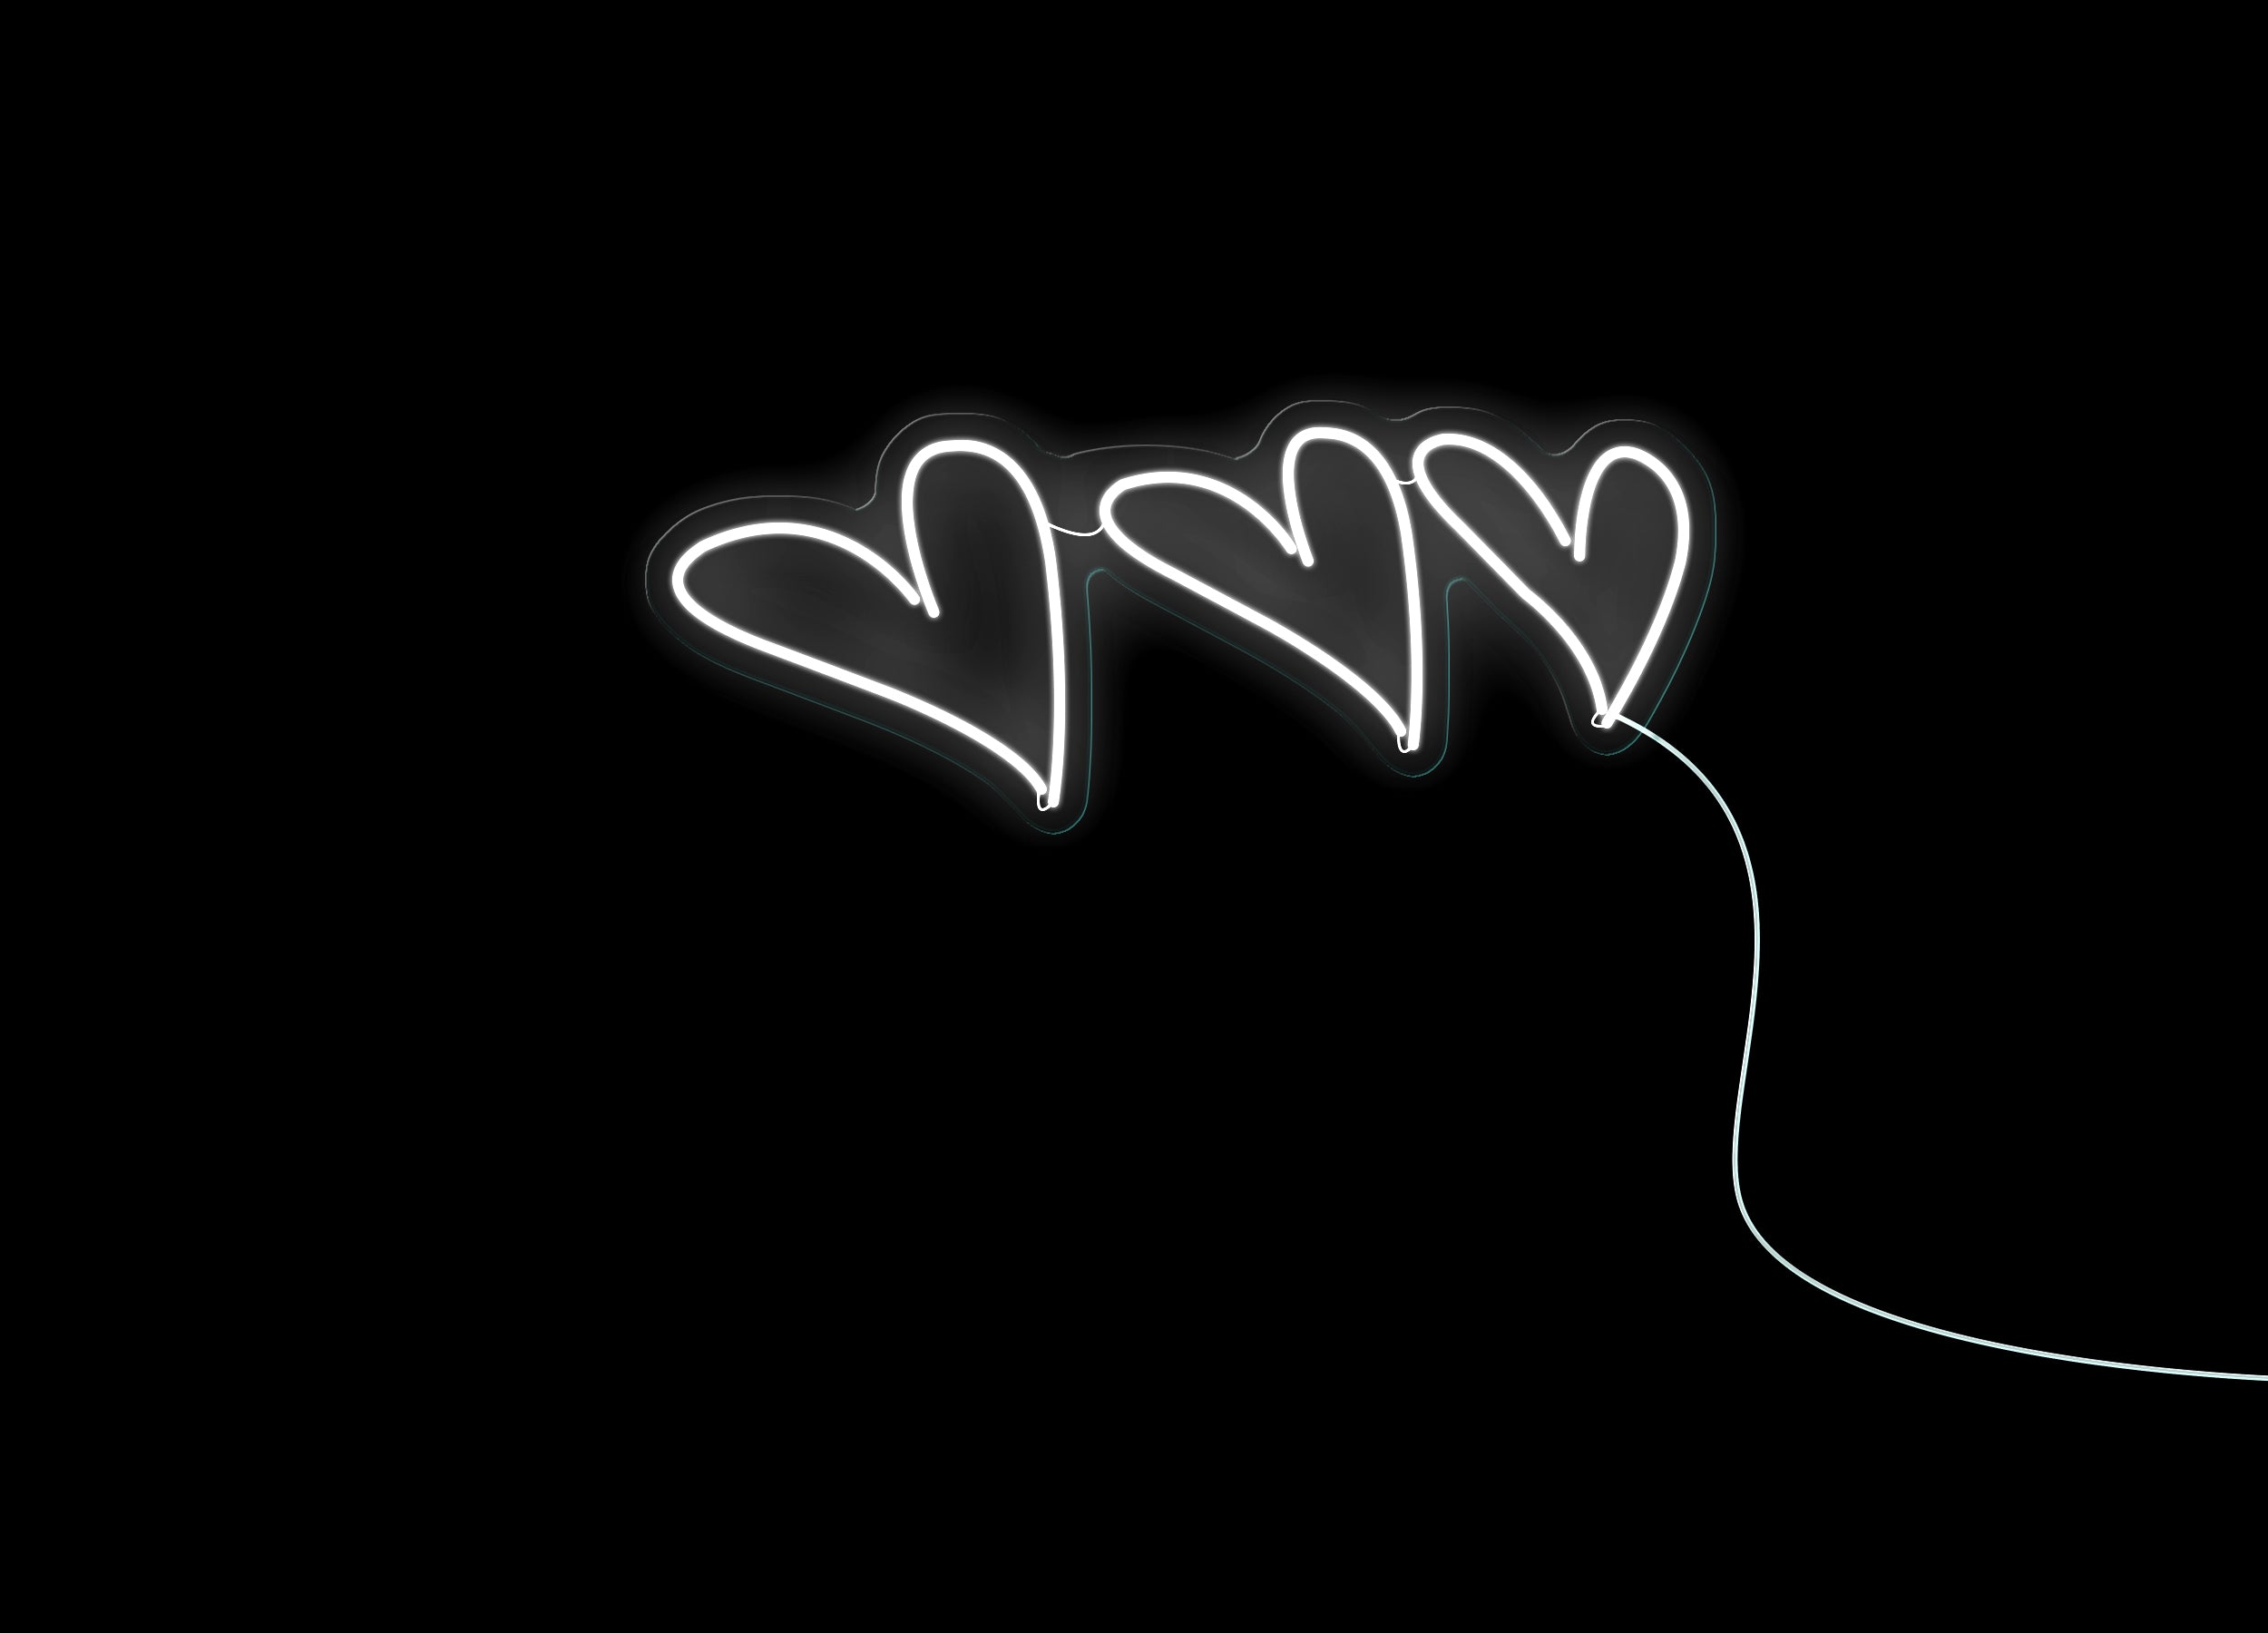 Yêu thích những bức ảnh đầy lãng mạn và đầy màu sắc? Hãy xem ngay hình ảnh Đèn Neon hình trái tim trong bộ sưu tập của chúng tôi để cảm nhận niềm mong đợi và hy vọng về tình yêu cùng chiếc đèn lung linh, rực rỡ!